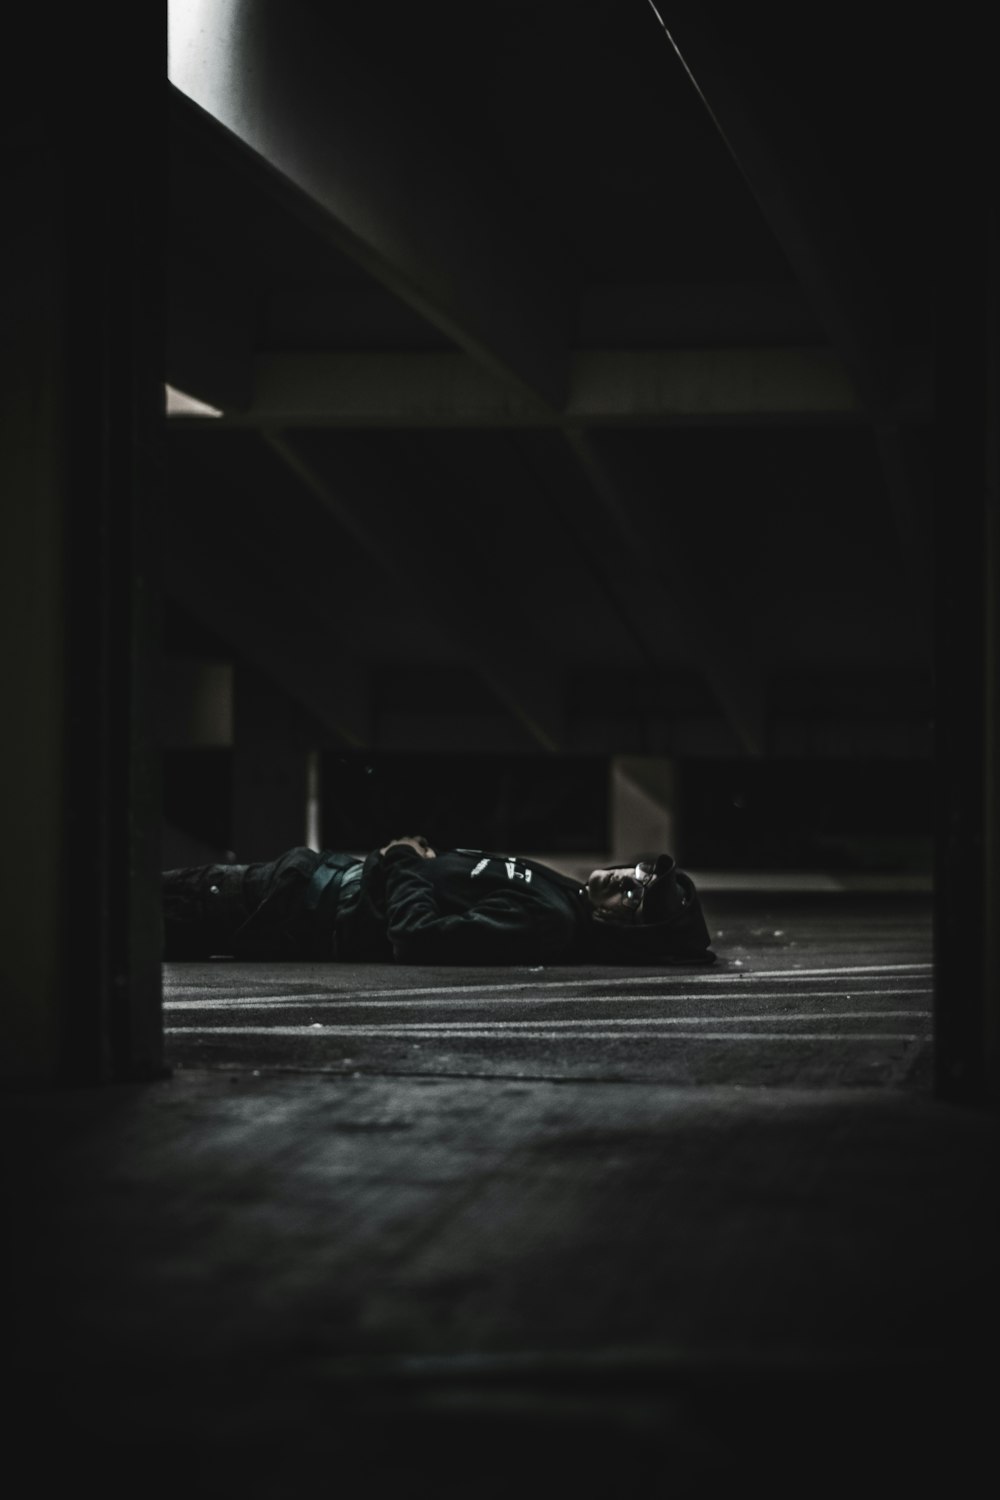 una persona sdraiata sul pavimento in una stanza buia